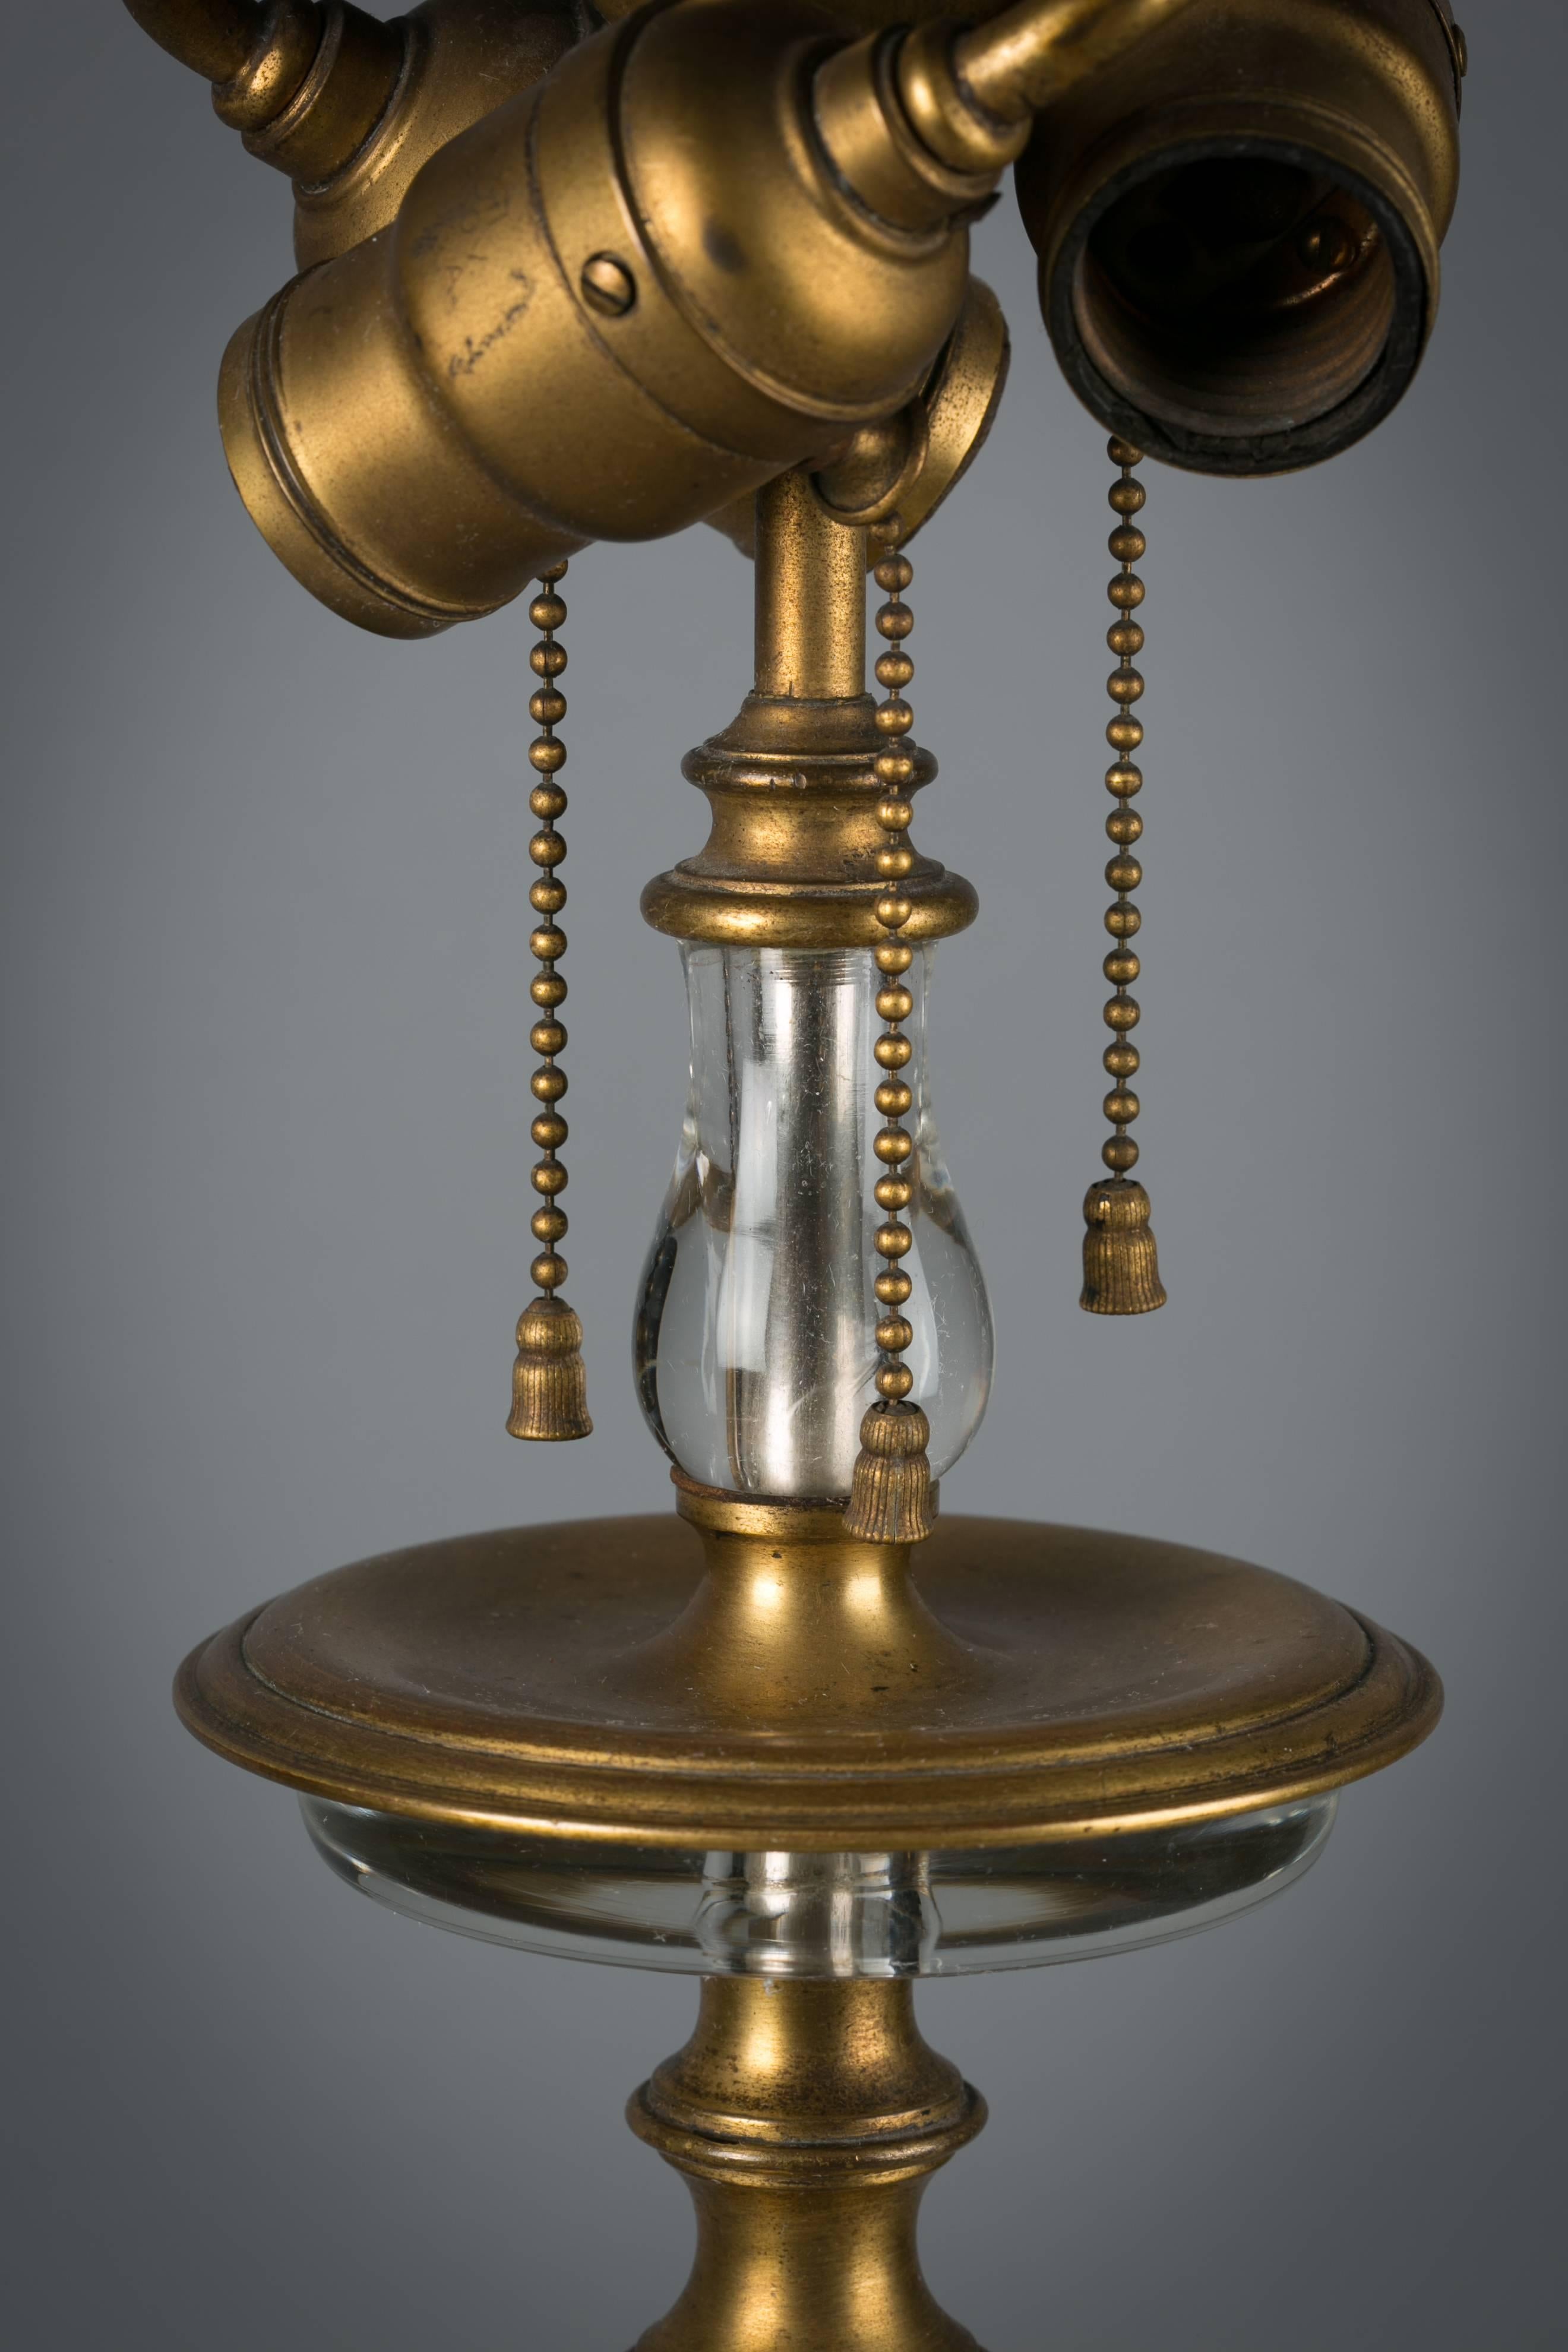 Lampe américaine en bronze et cristal de roche, vers 1900. Réalisé par E.F. Caldwell et Cie.